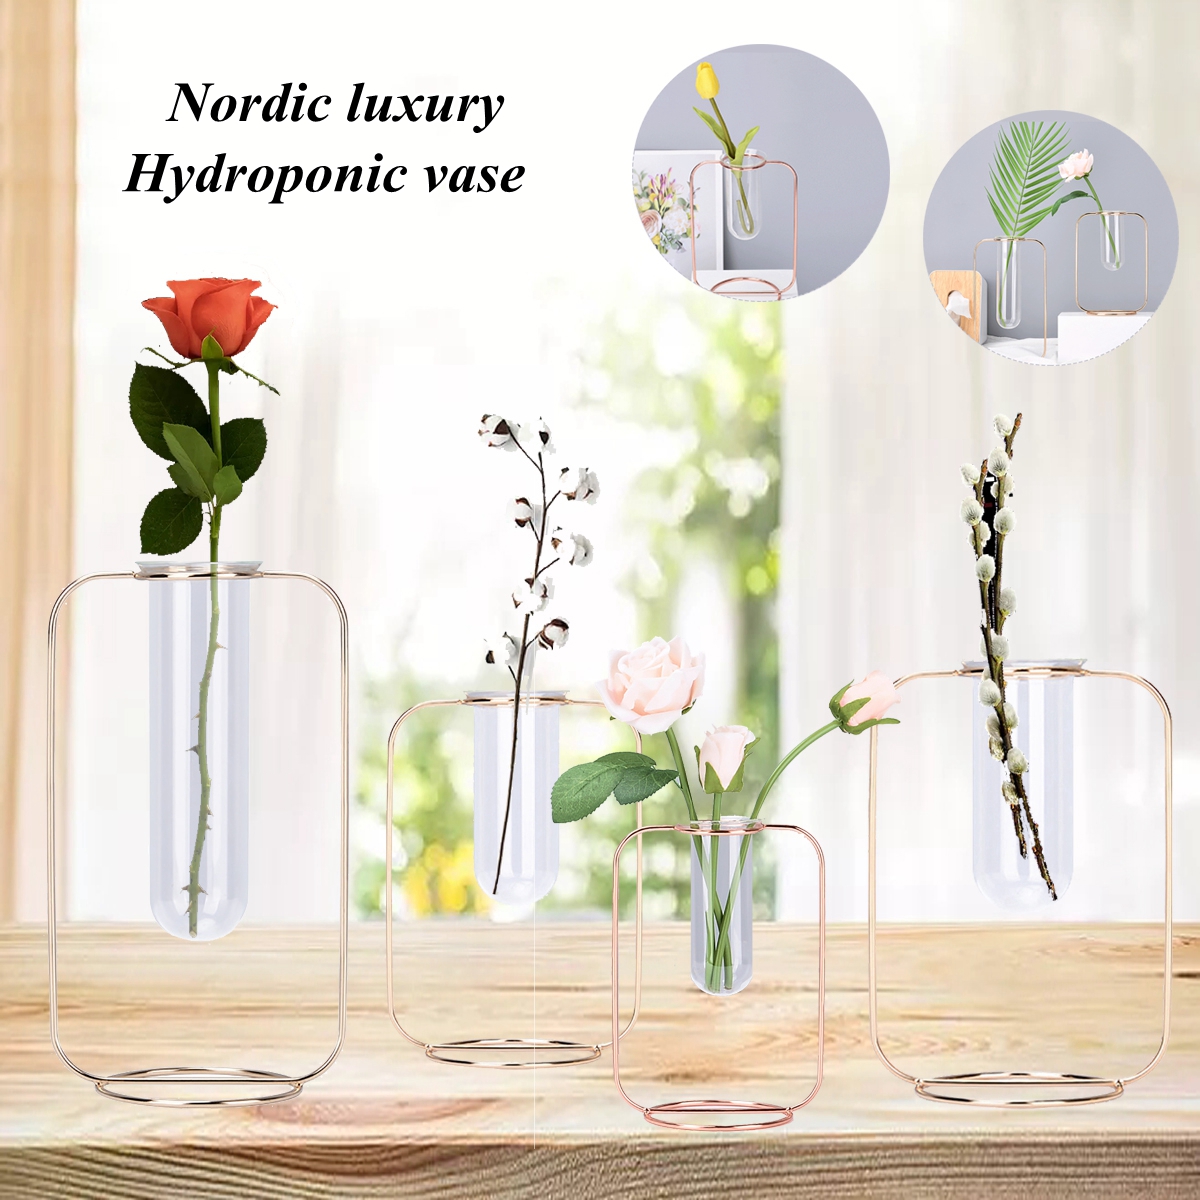 Glass-Test-Tube-Glass-Vase-Pot-Container-Holder-Plants-Flowers-Desk-Decor-Gift-1691579-1